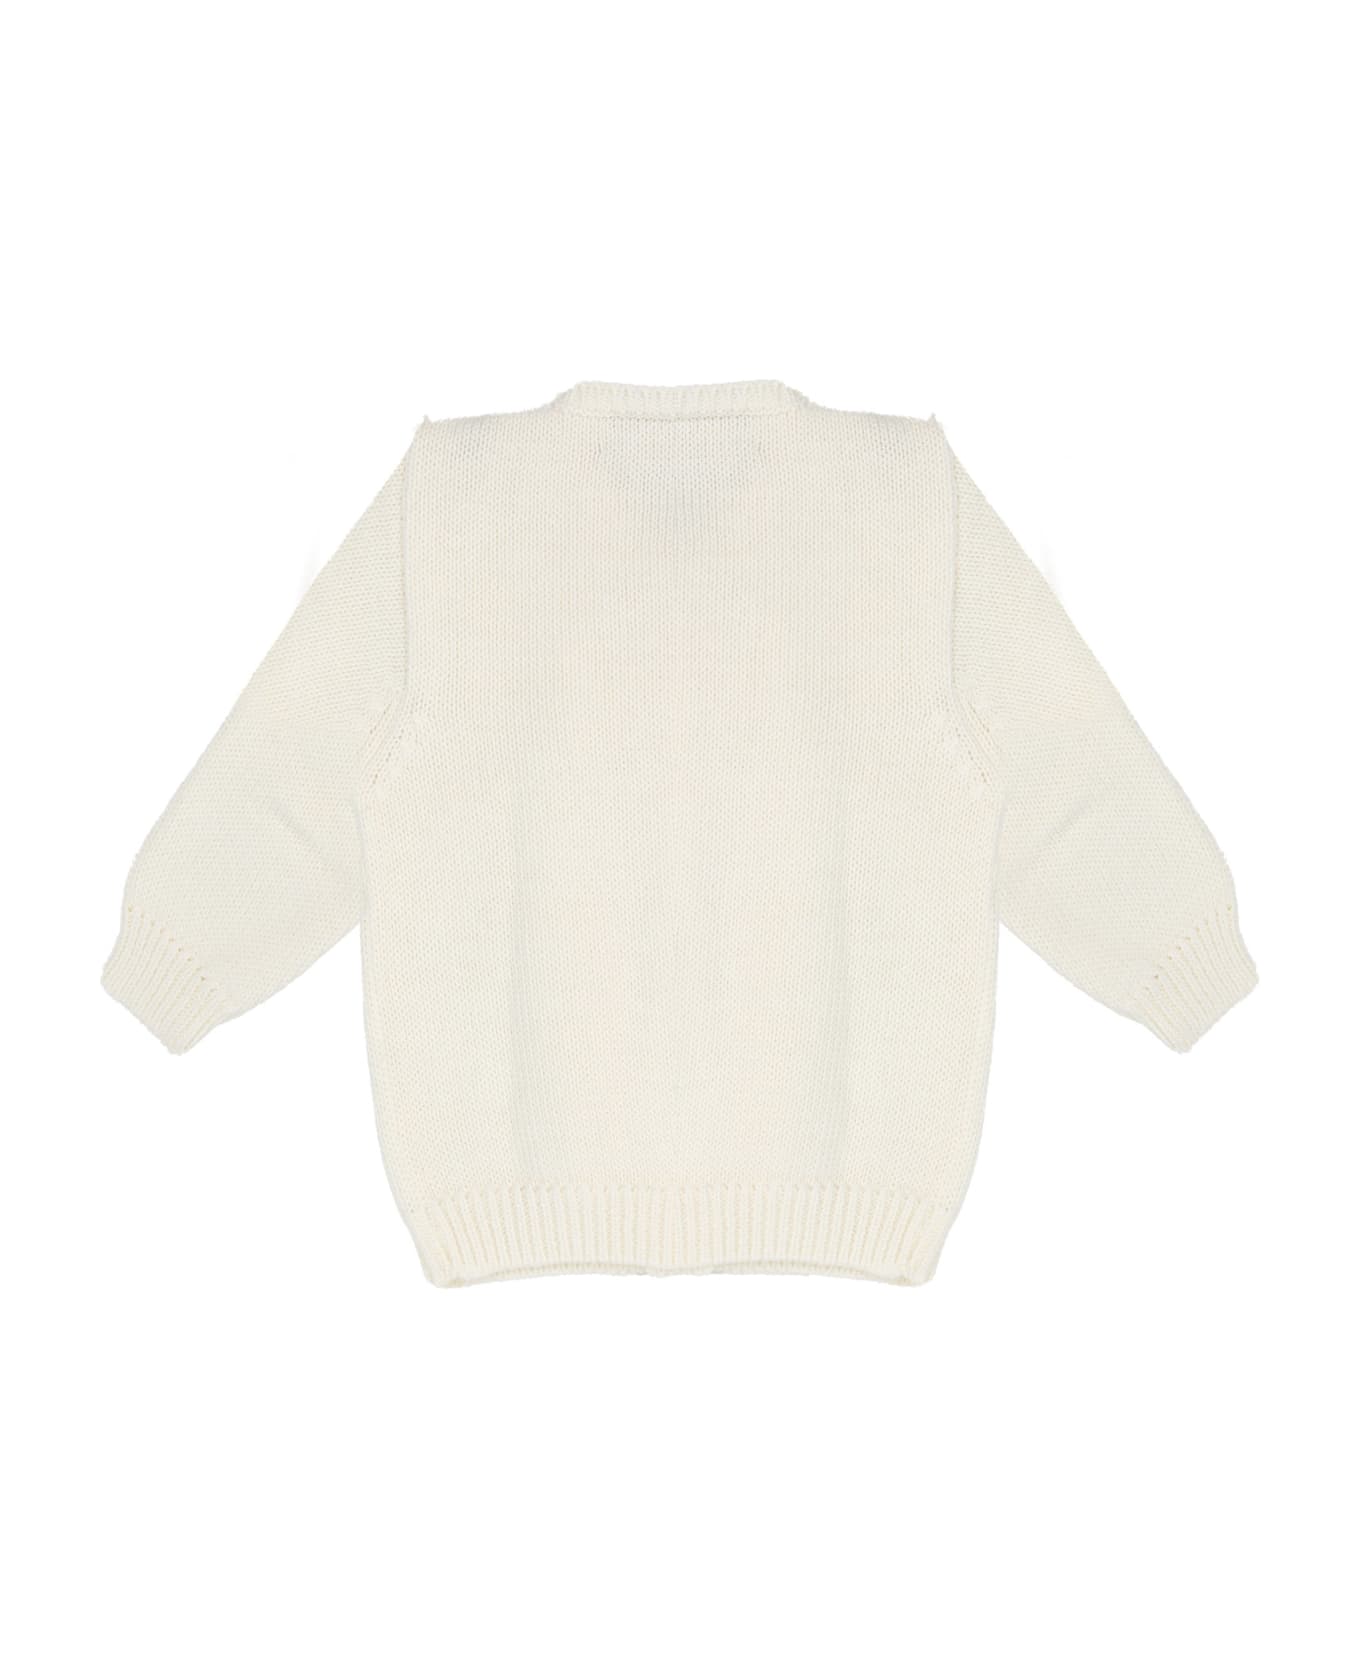 La stupenderia Cotton Sweater - White